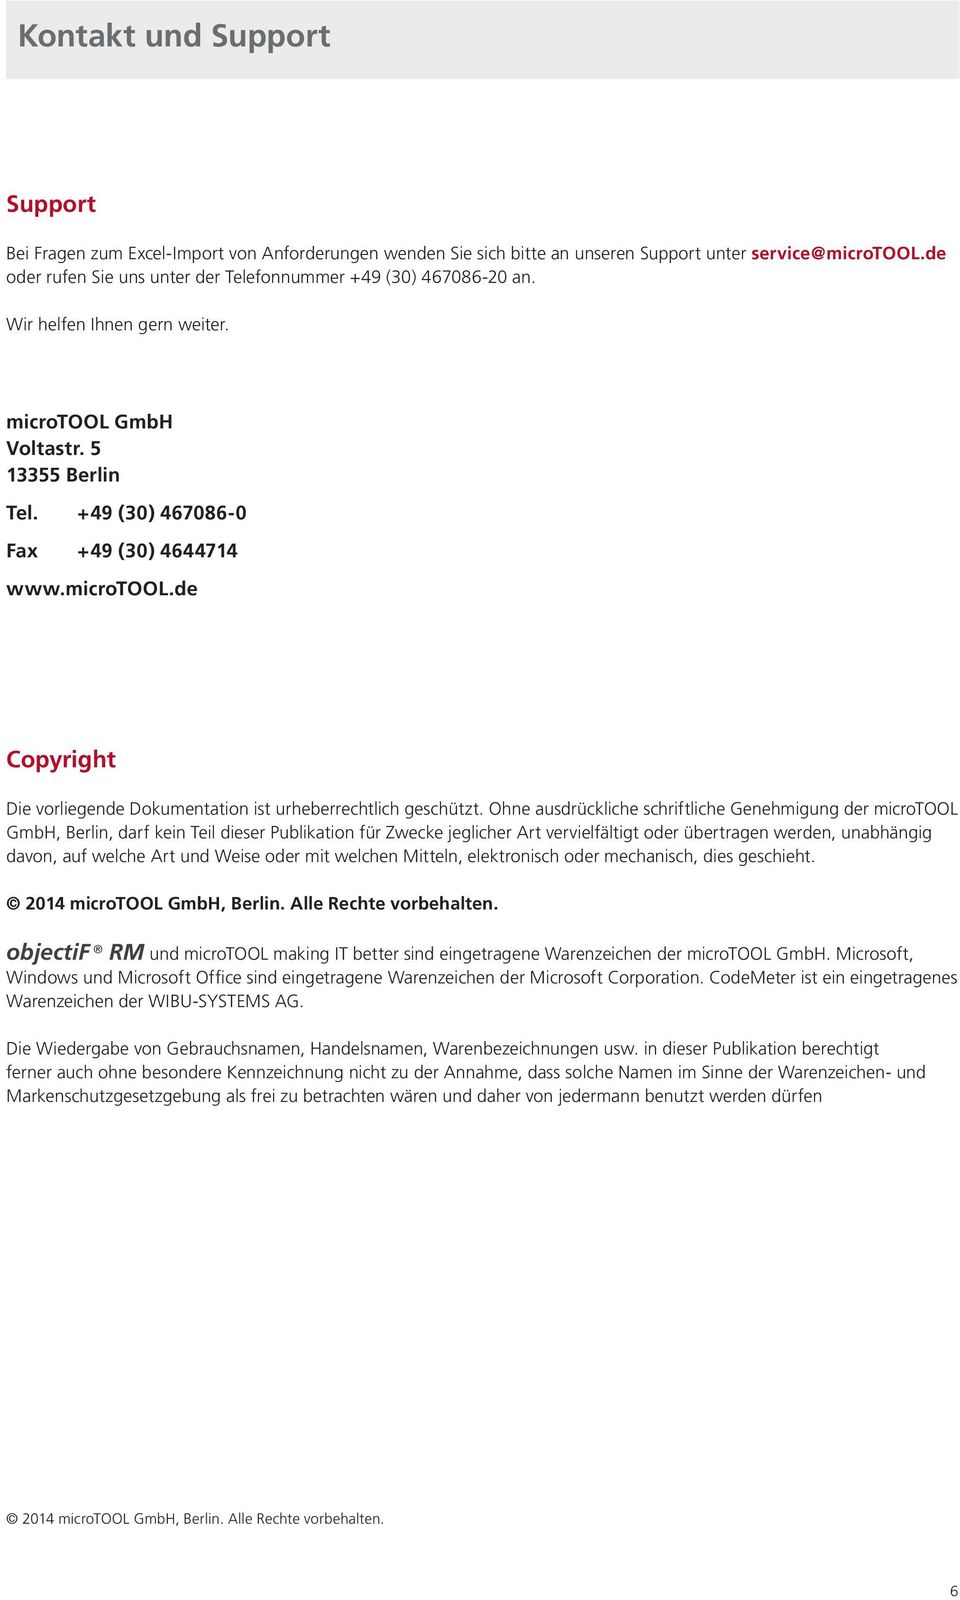 Ohne ausdrückliche schriftliche Genehmigung der microtool GmbH, Berlin, darf kein Teil dieser Publikation für Zwecke jeglicher Art vervielfältigt oder übertragen werden, unabhängig davon, auf welche